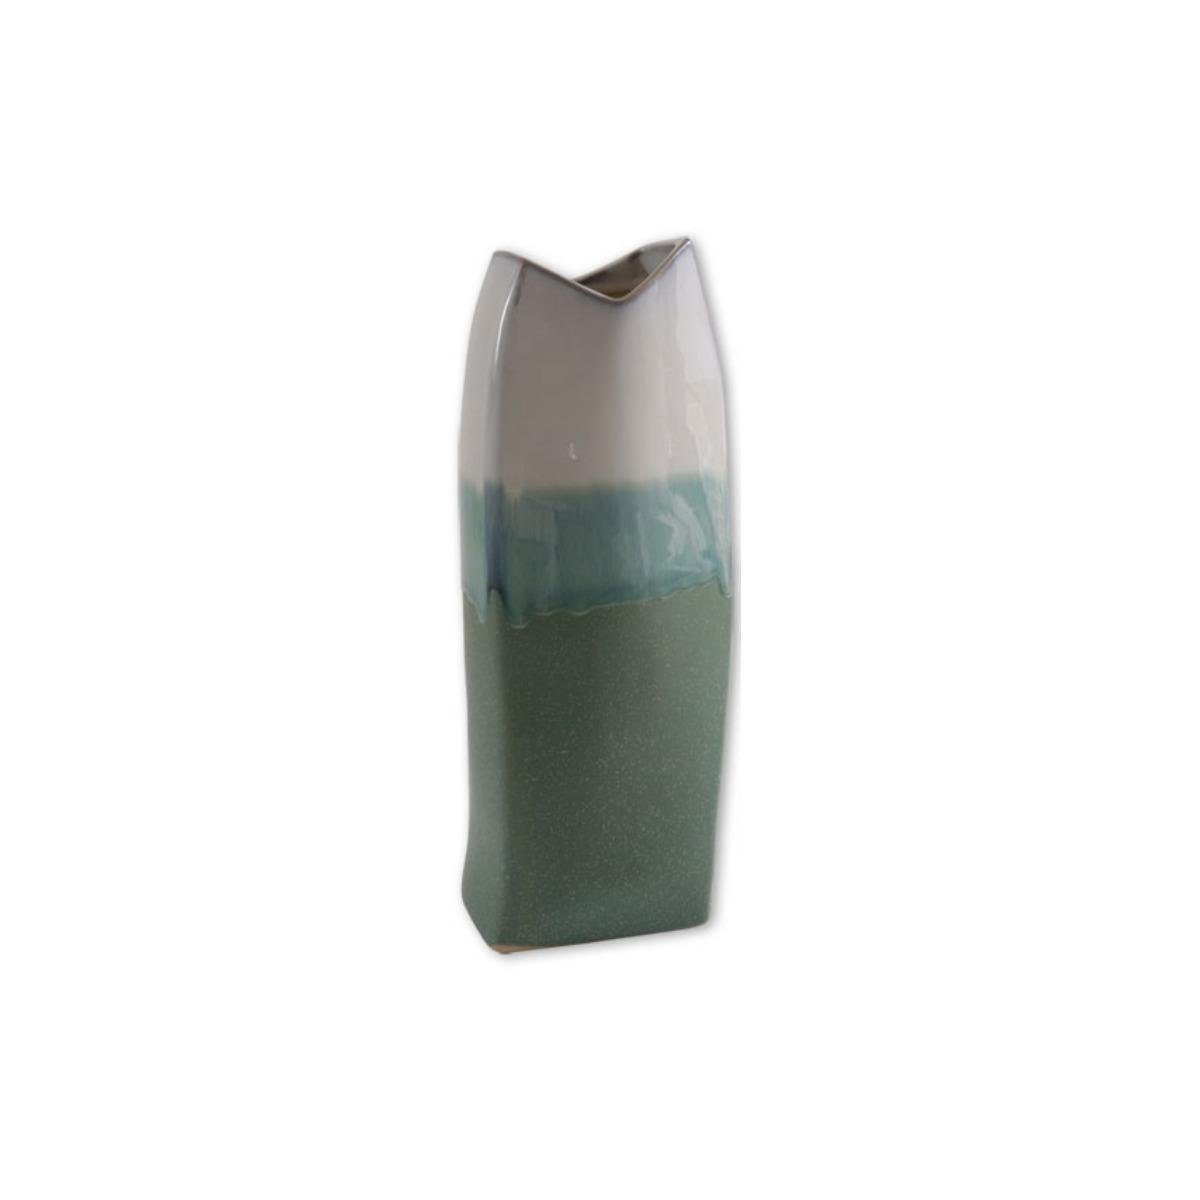 Seyko-Geschenke Dekovase 390017 - Keramik Vase "Leandro", 32cm